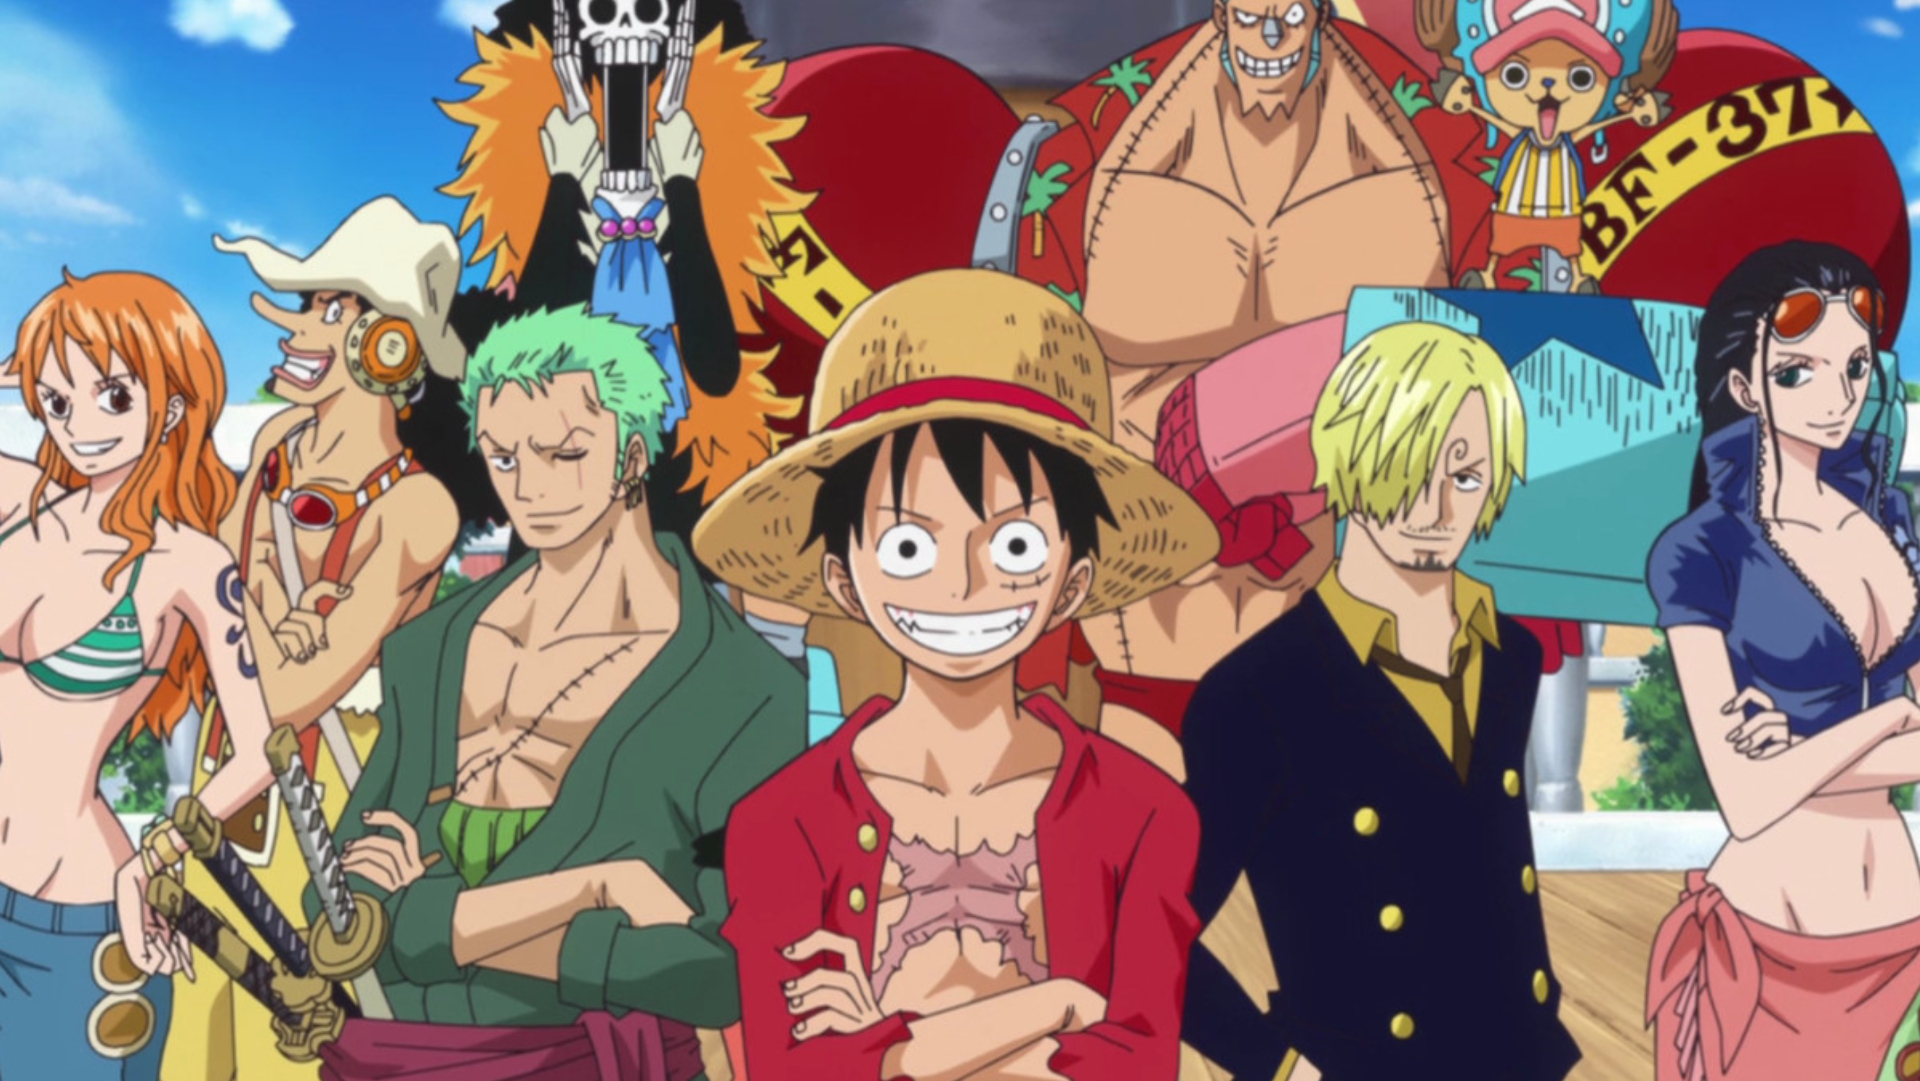 Art clé pour One Piece mettant en vedette le casting de l'équipage Straw Hat Pirates,